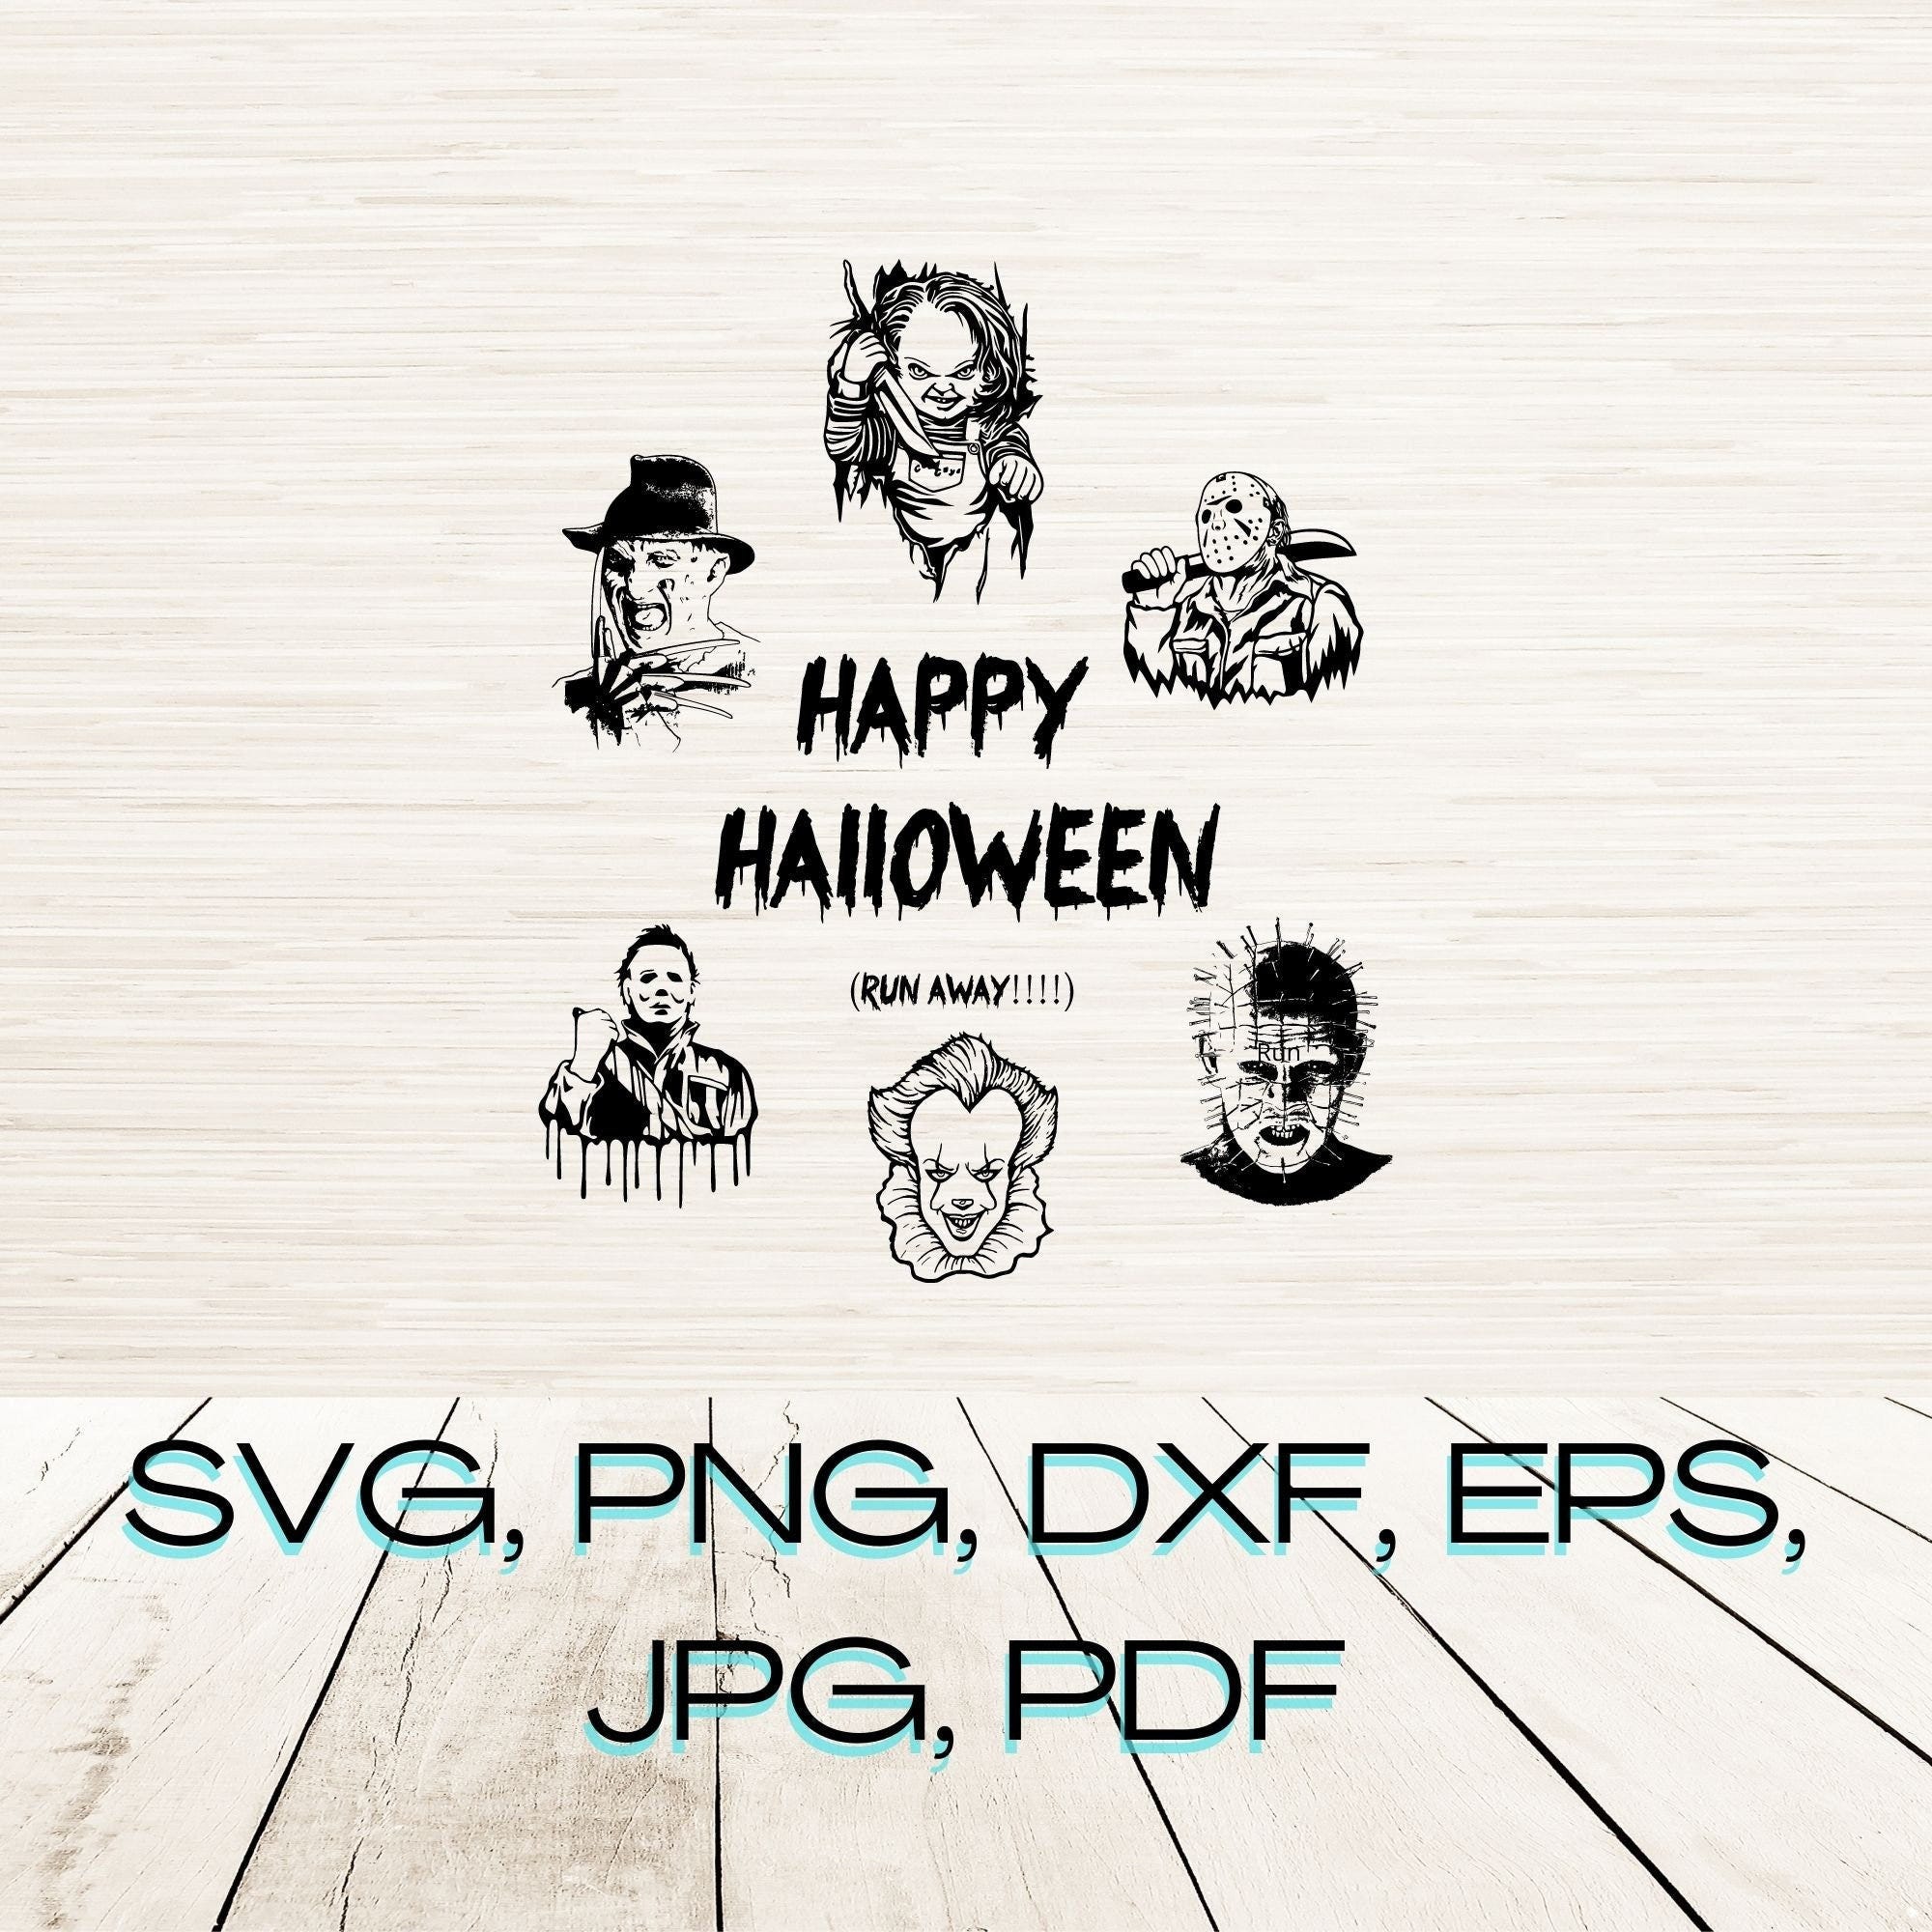 Freddy Krueger, Halloween decor, Laser engraving, png, svg, jpeg, pdf, vector, instant download, digital download, svg for cricut download